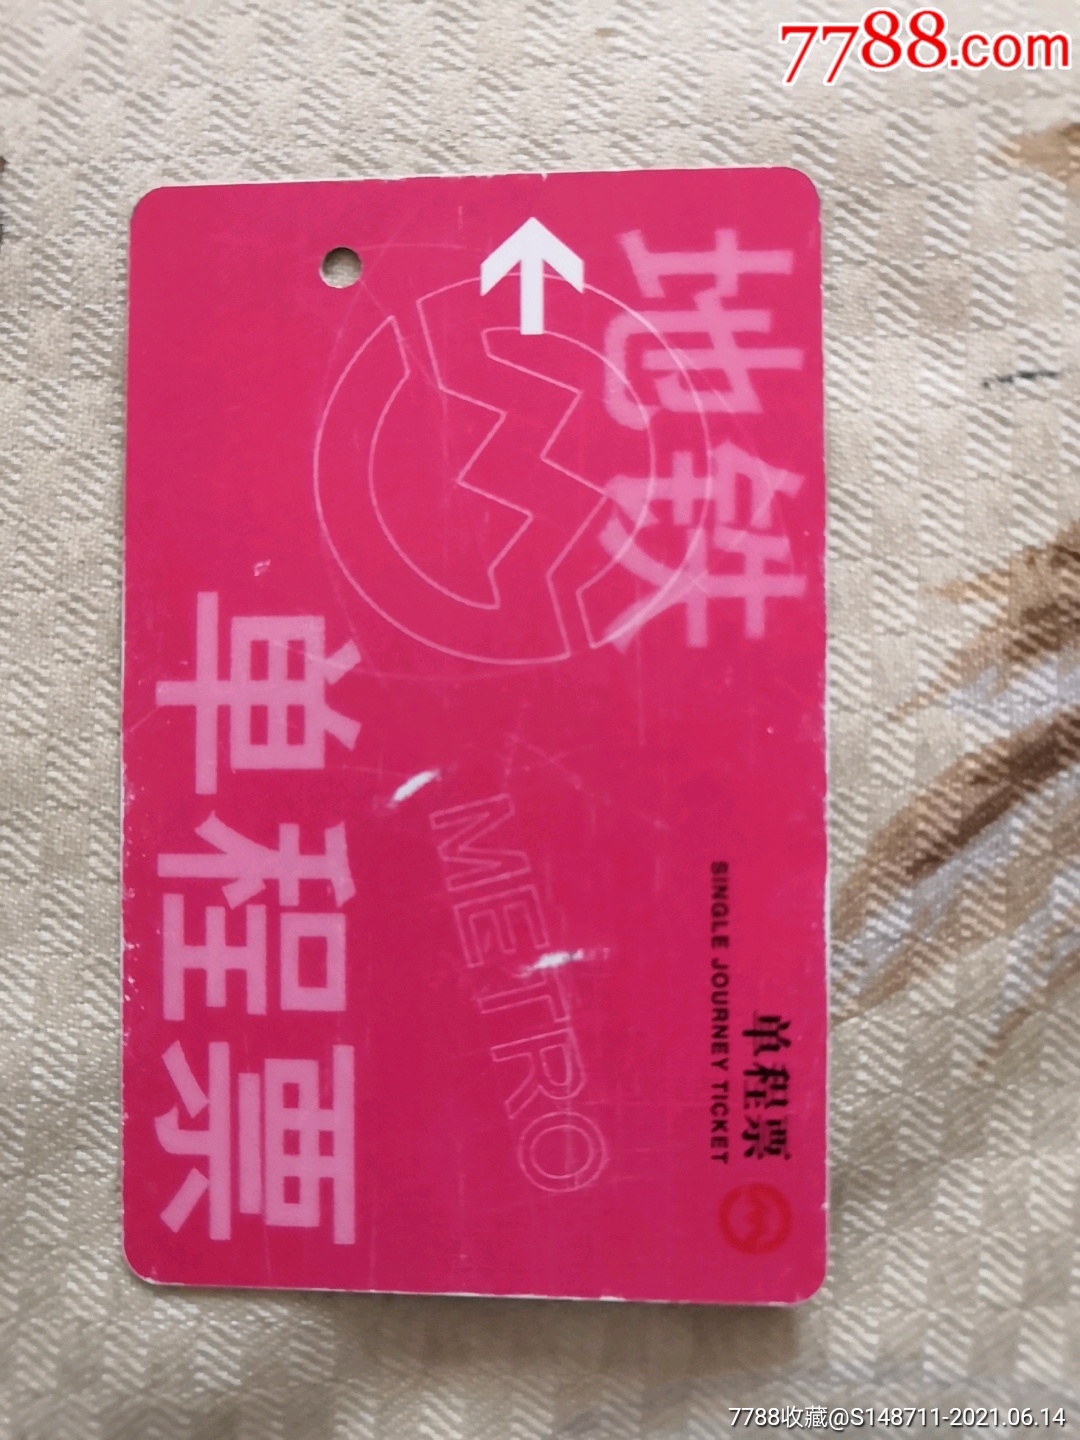 《上海地铁单程票》(红票田村卡)smc-p0002